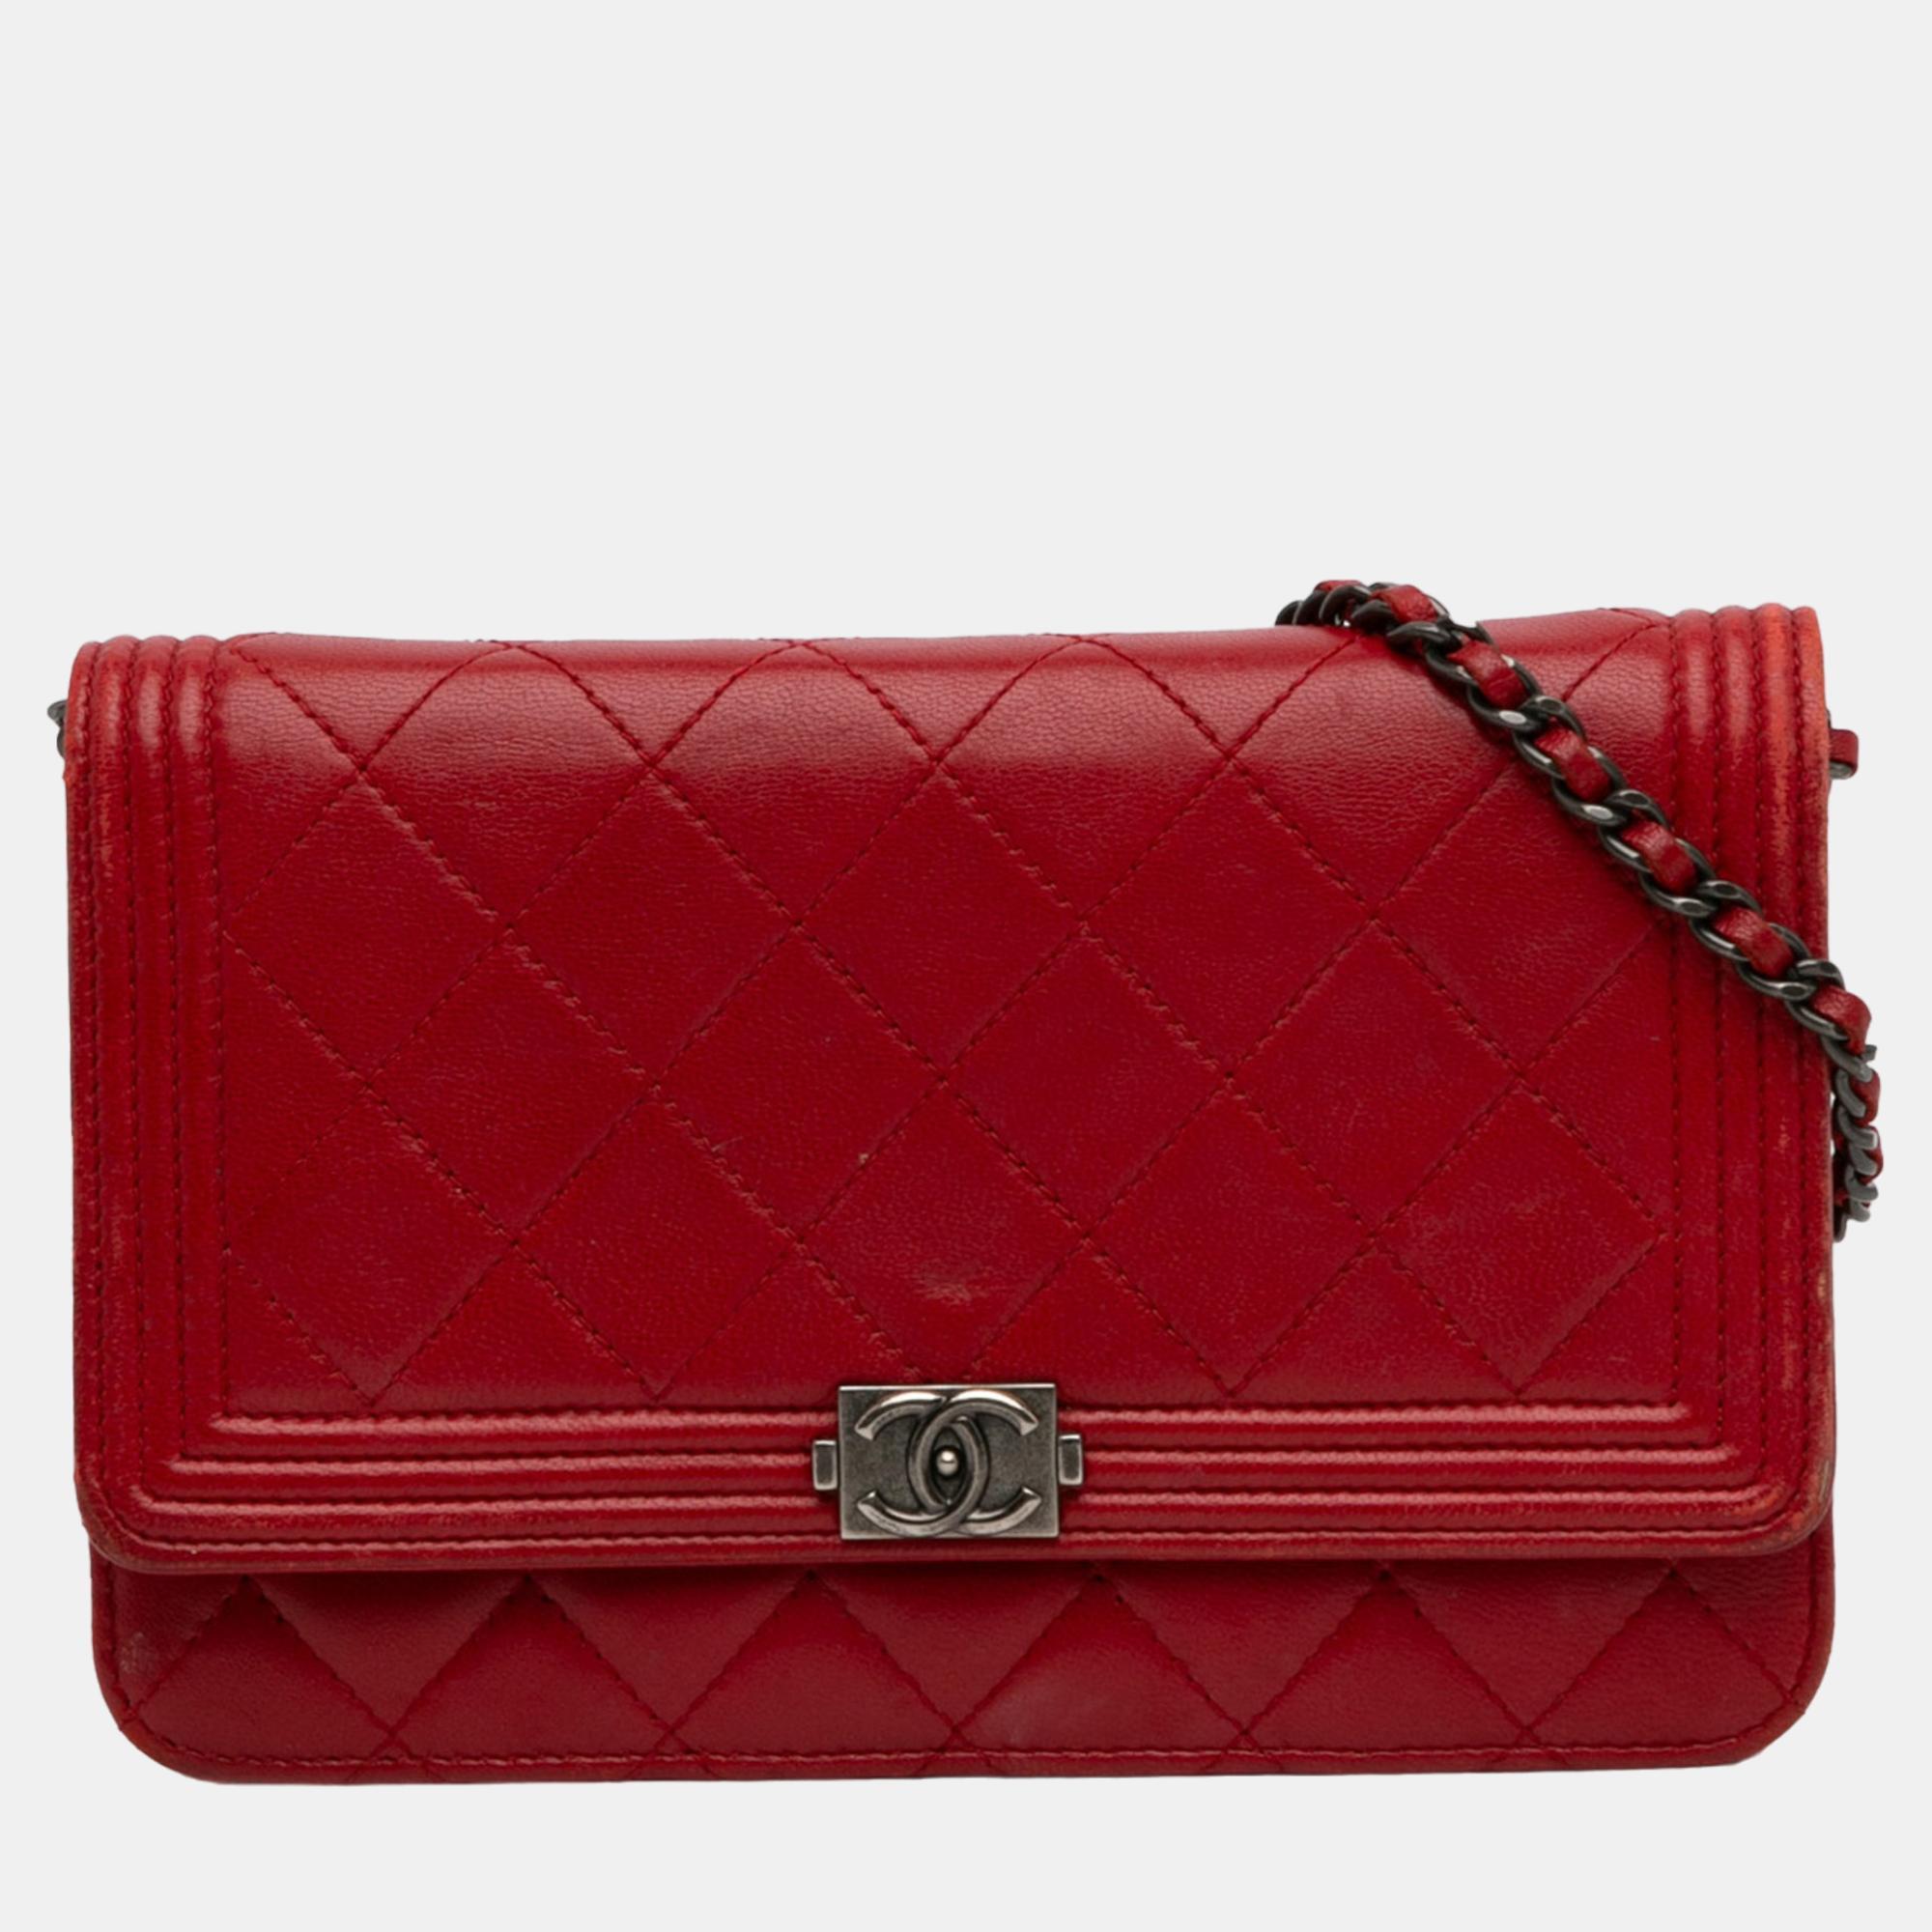 Chanel red lambskin boy wallet on chain